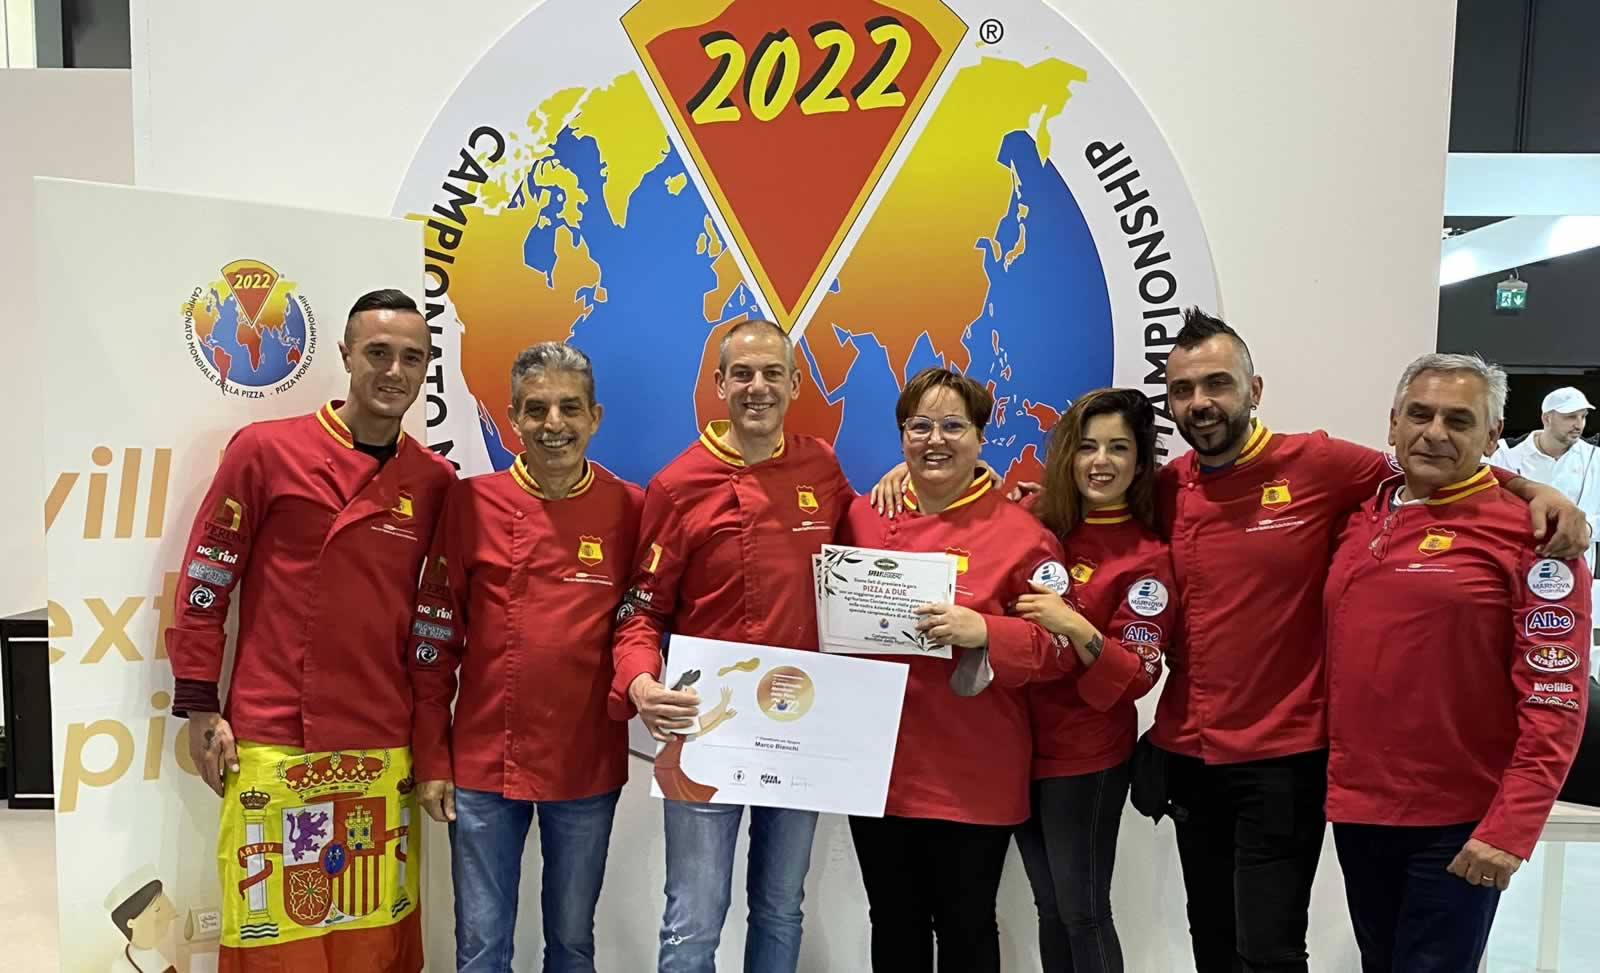 La Selección Española de Pizzeros, capitaneada por Marquinetti, se cuela entre los mejores pizzeros del mundo